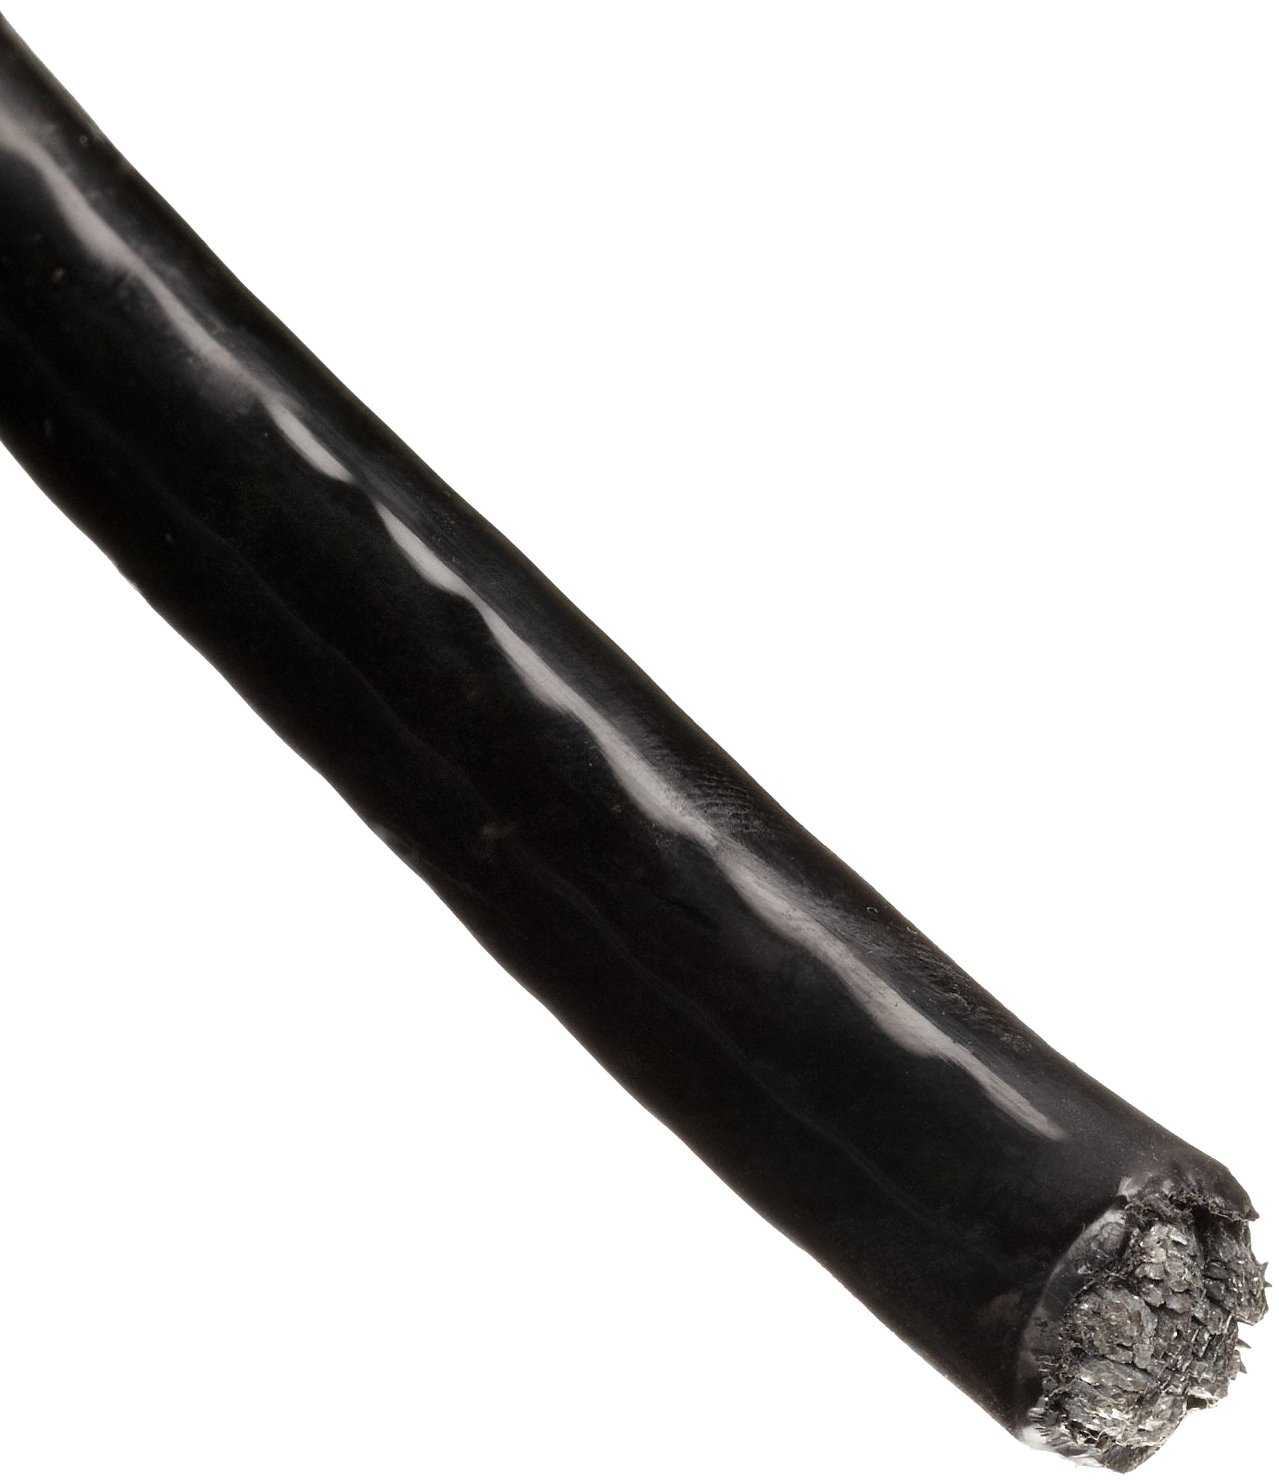 Трос в ПВХ оболочке 2,5 мм непрозрачный черный - фото